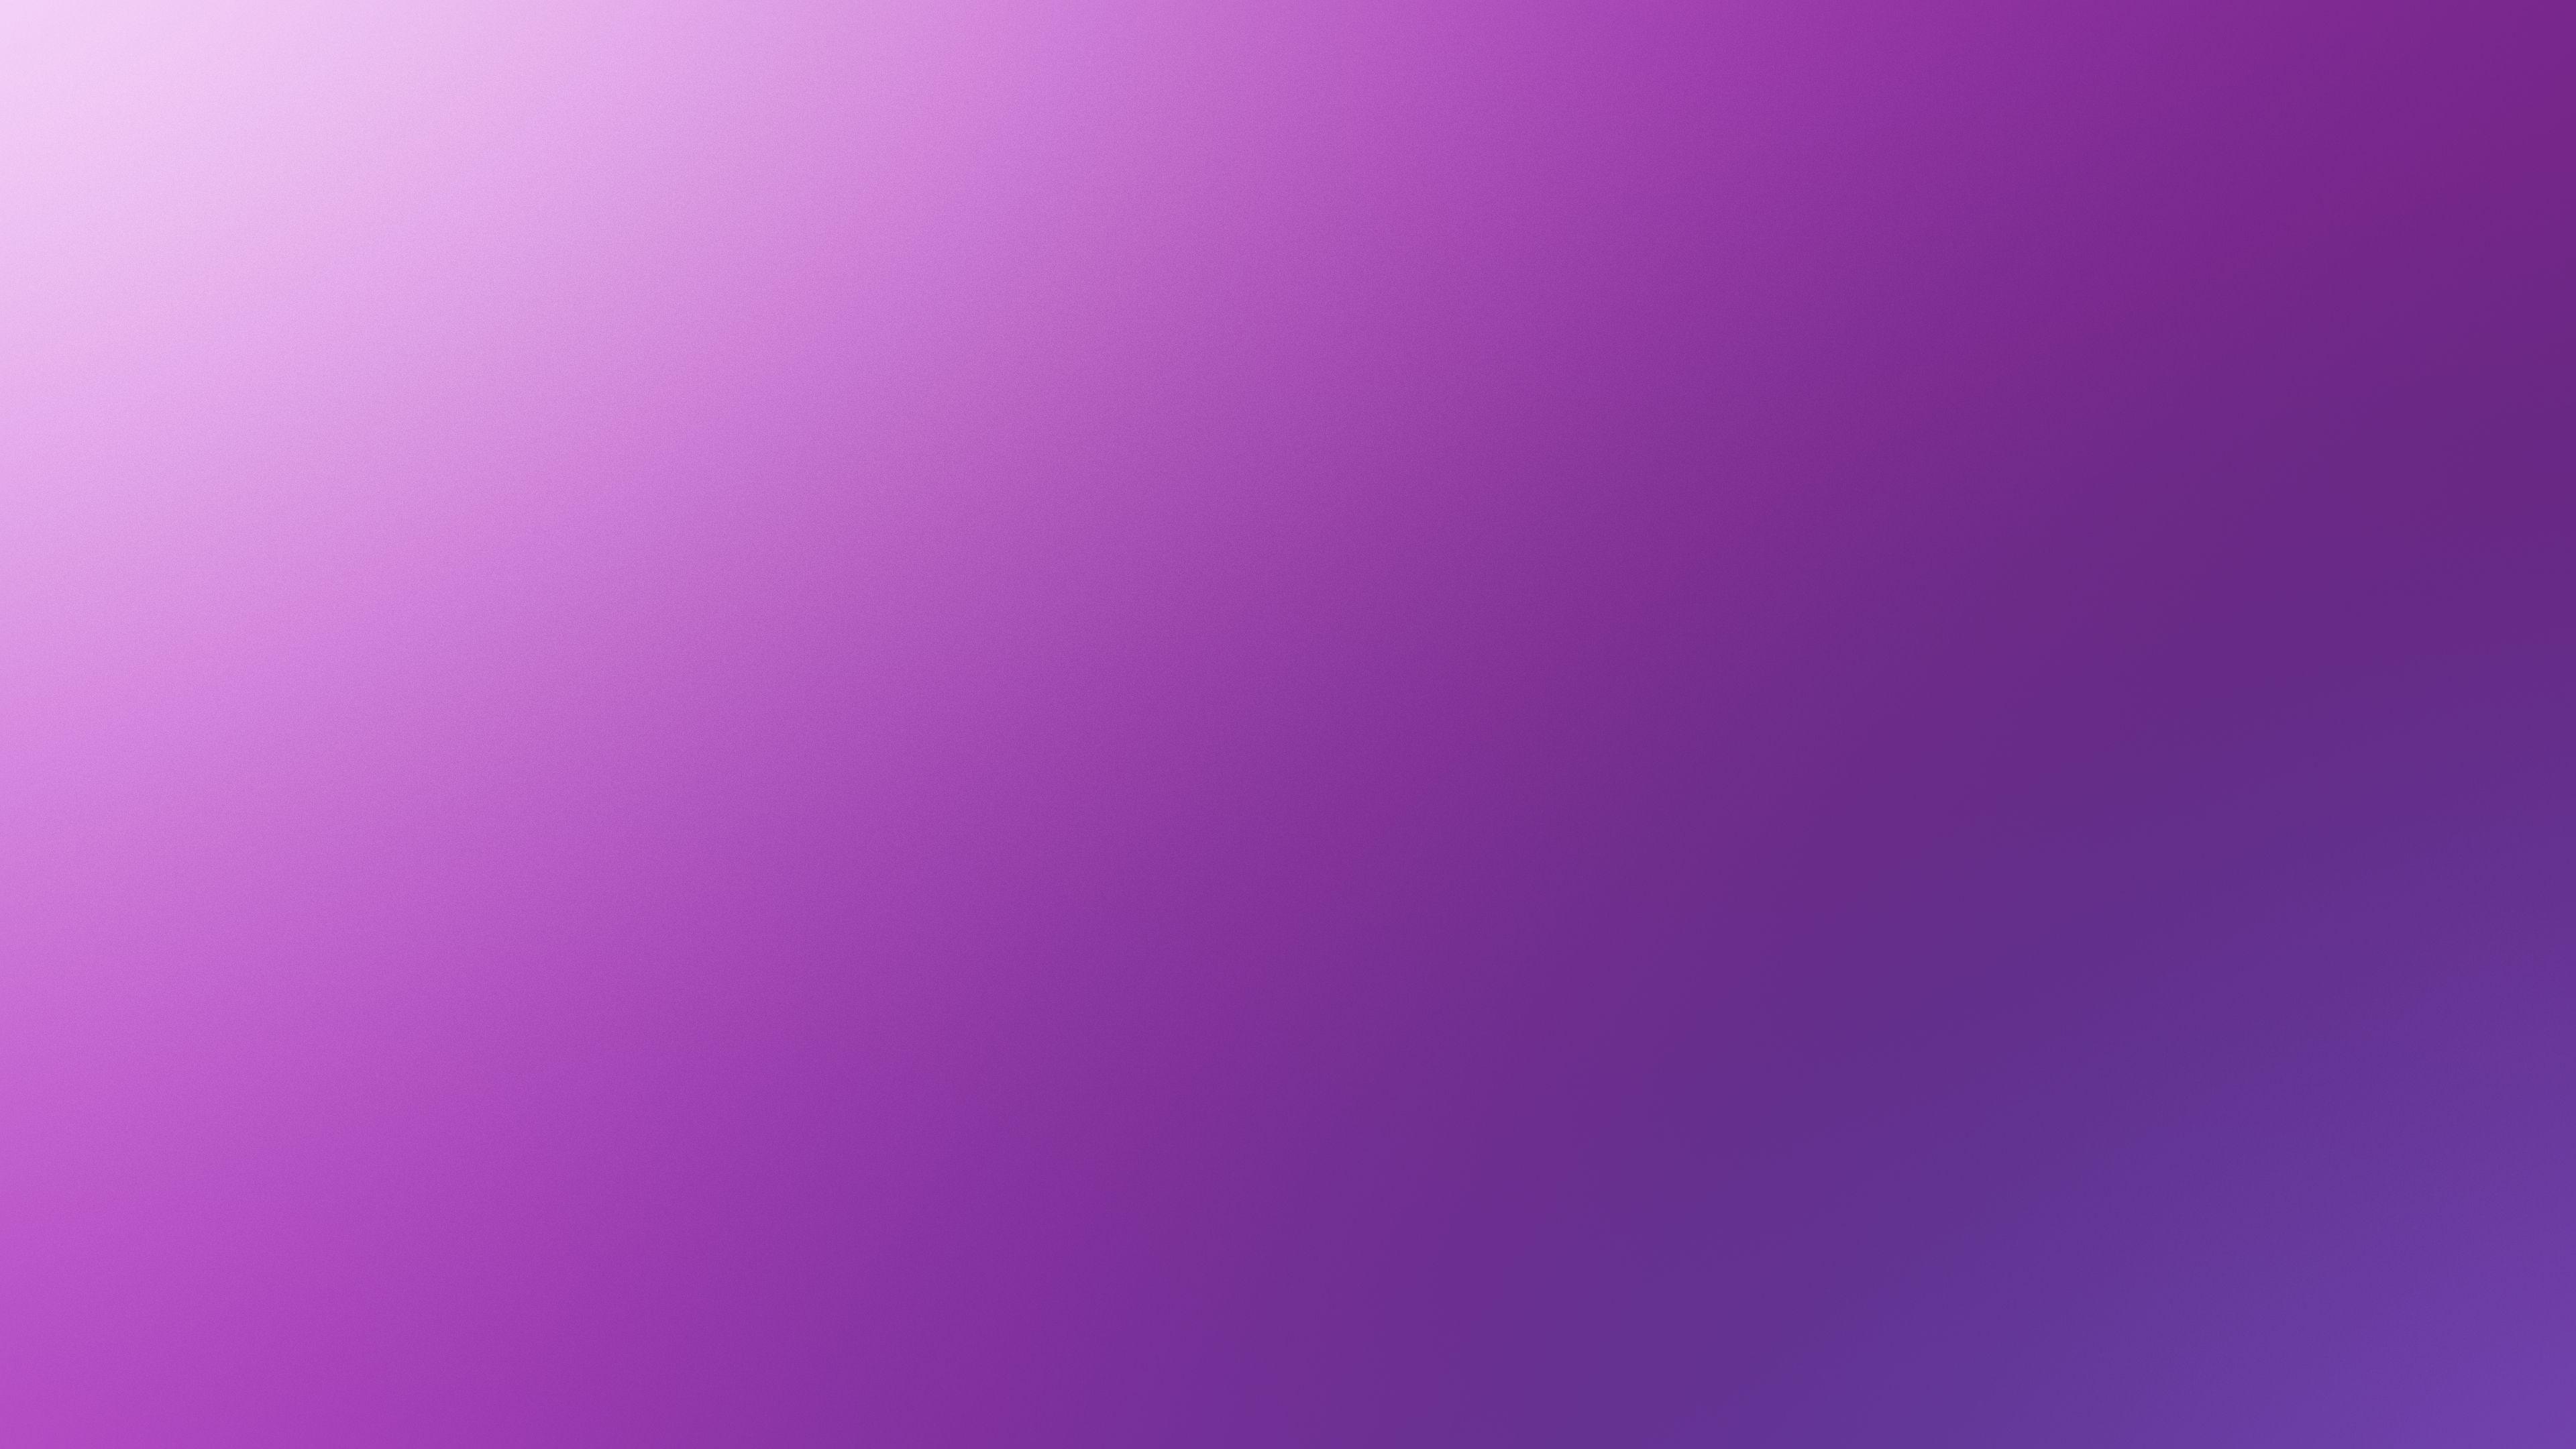 Light Violet Wallpapers - Top Hình Ảnh Đẹp